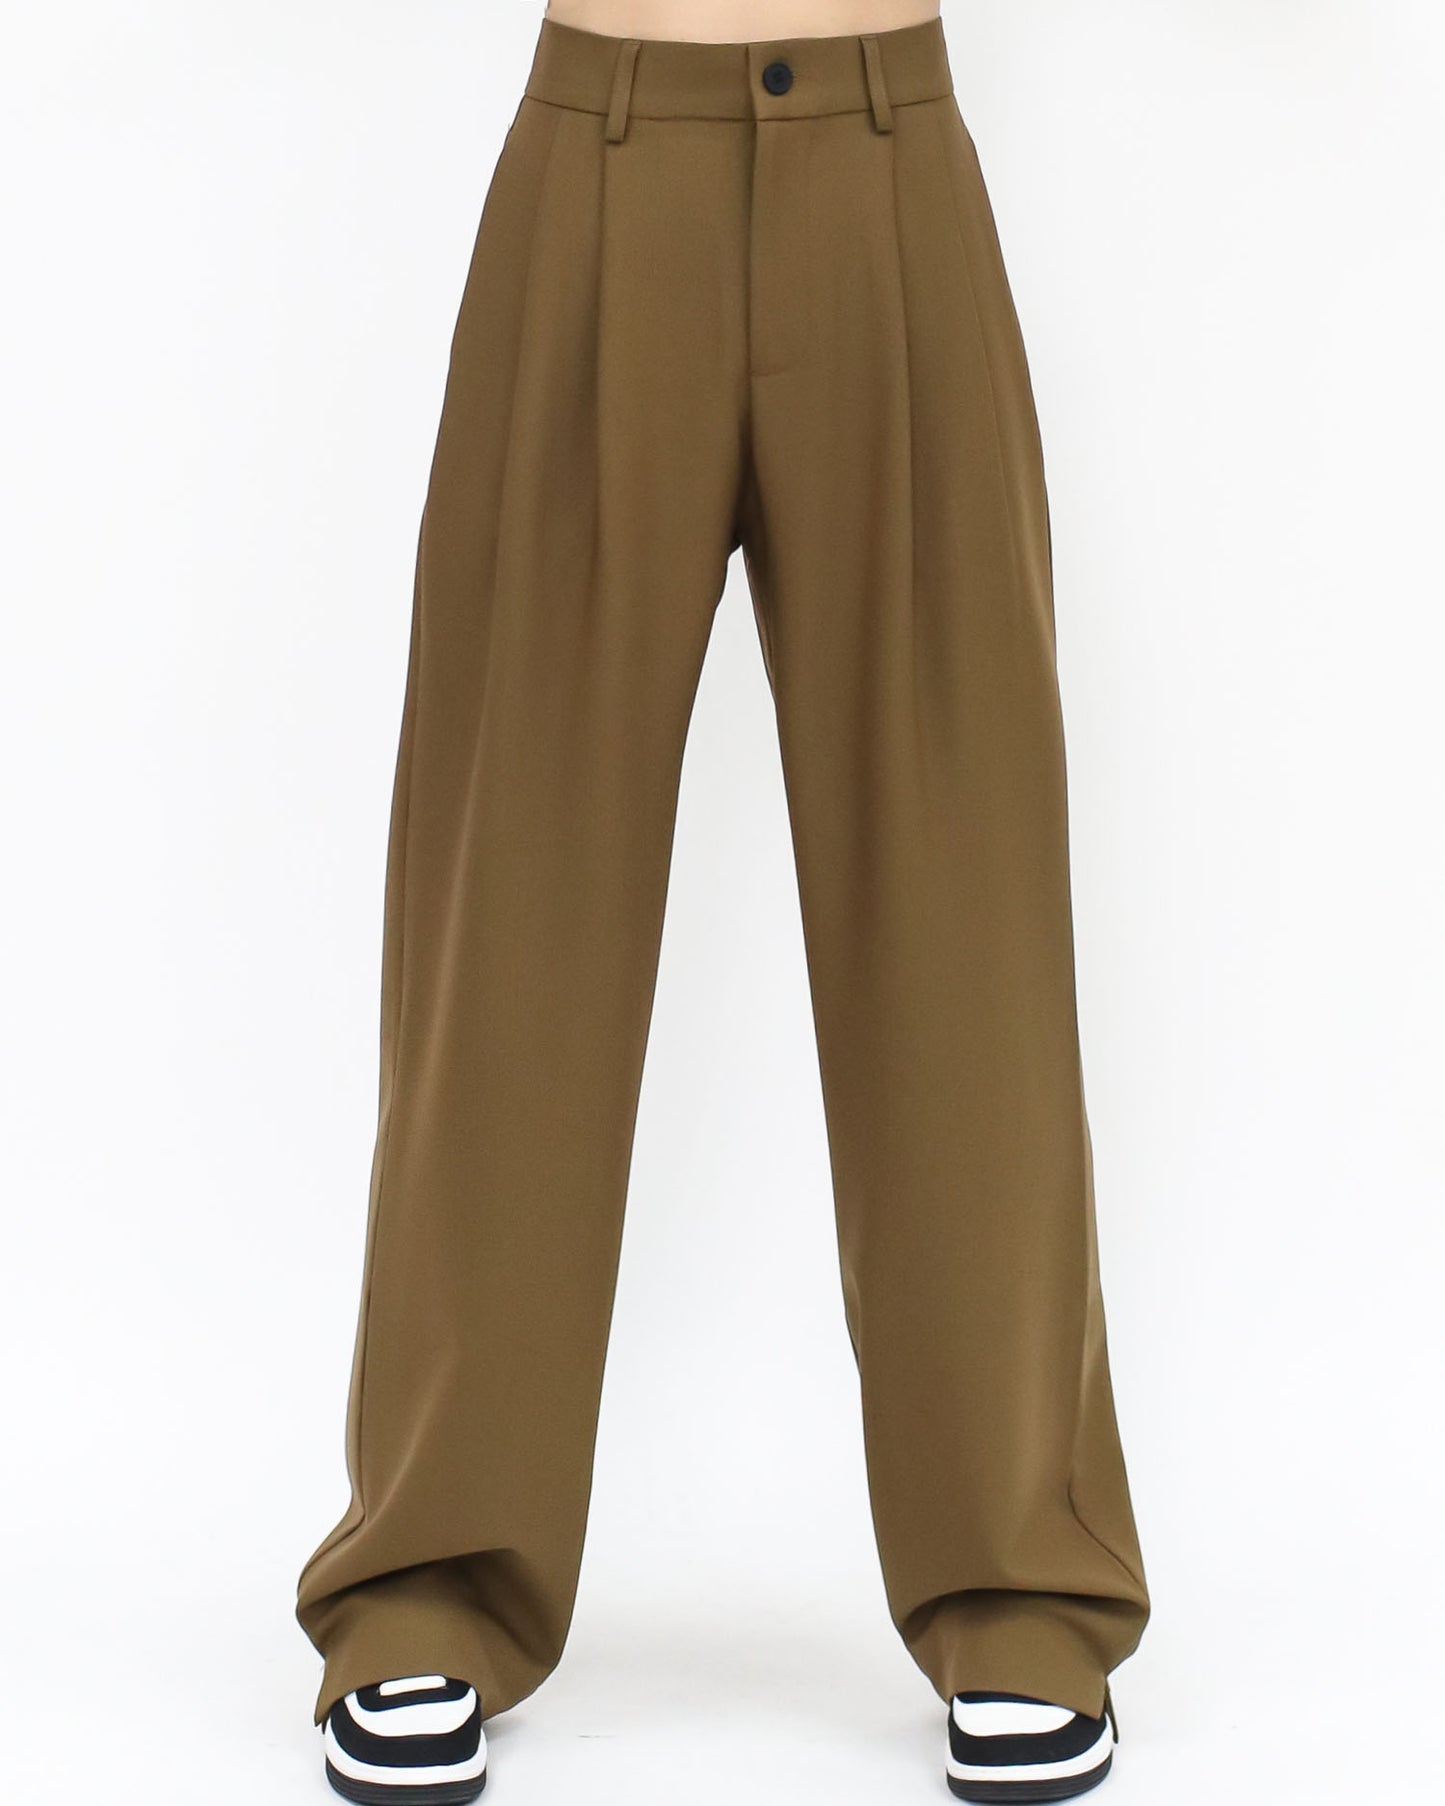 brown splits hem straight pants *pre-order*